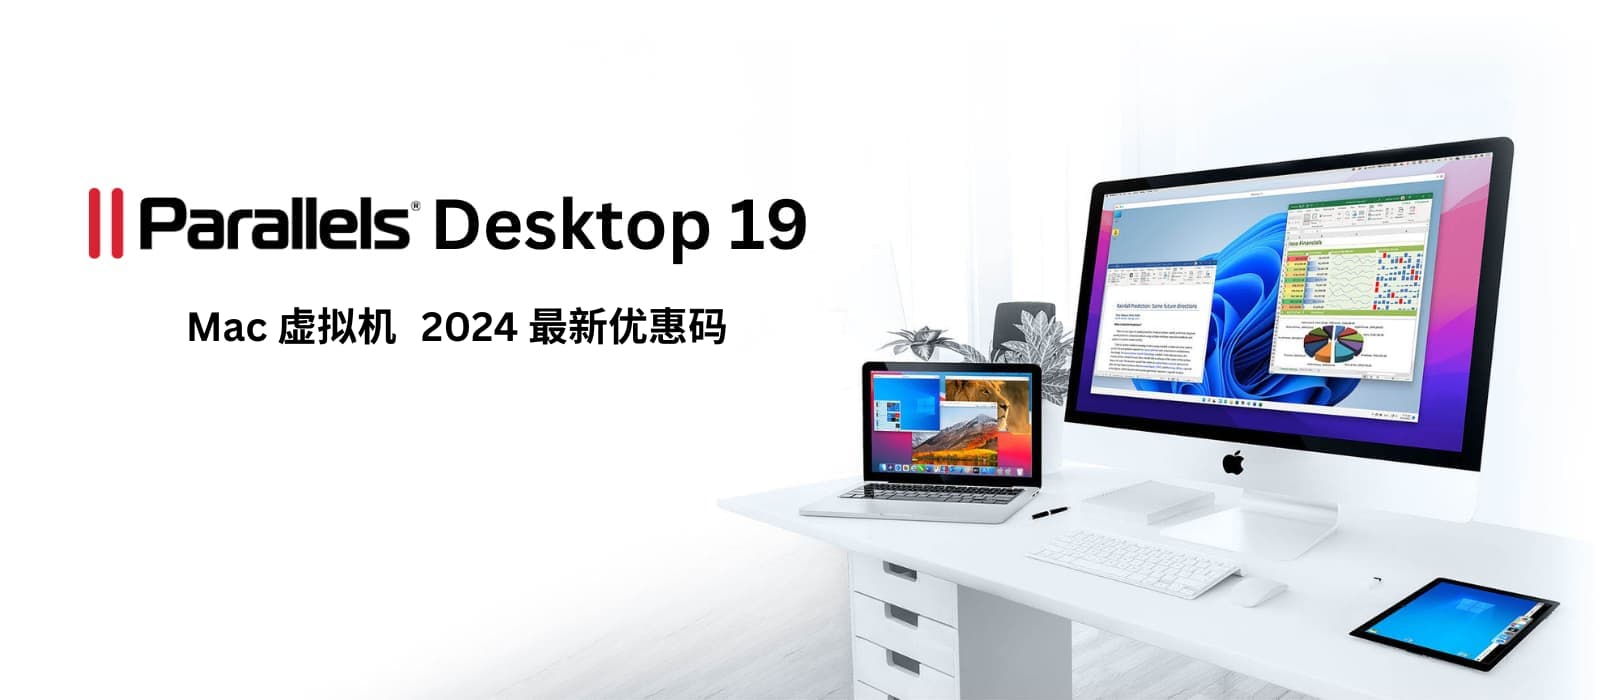 Parallels Desktop 19 - macOS 虚拟机工具，2024春季 8 折限时优惠[截止2024年5月1日] 8